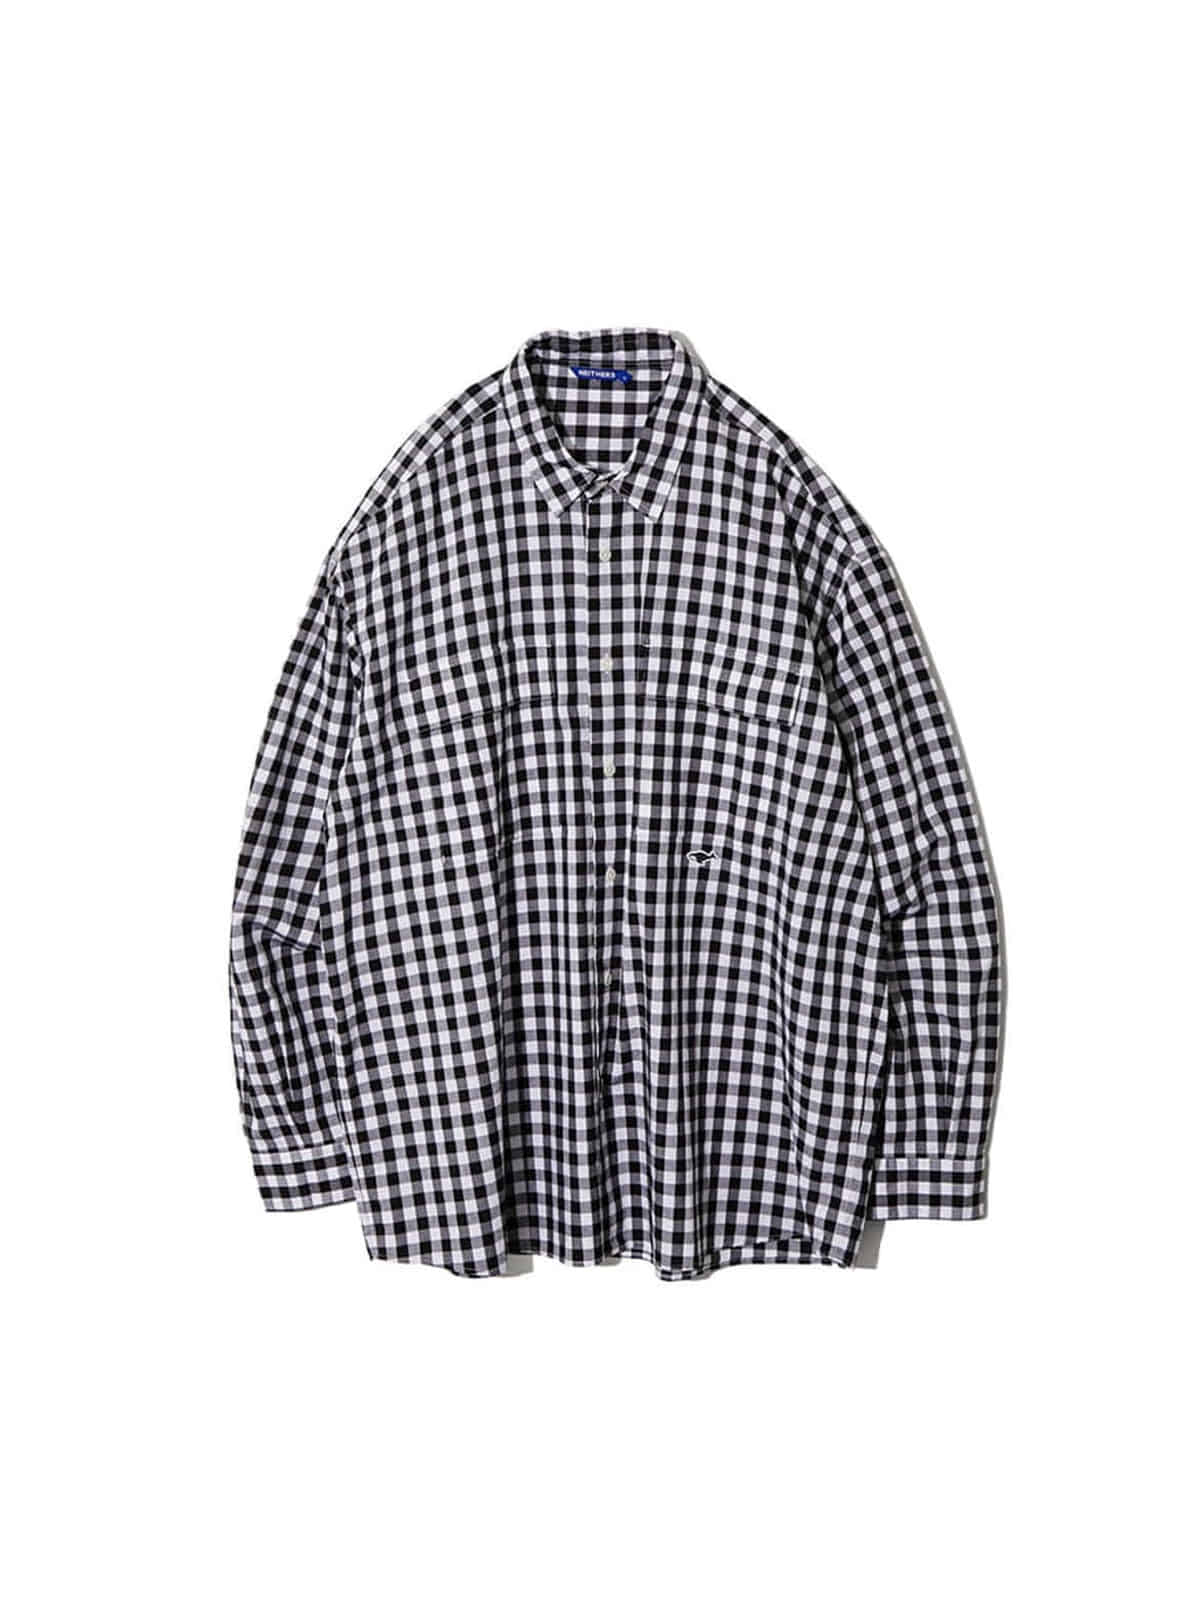 2-Pocket Wide Shirt (Black Gingham Check)